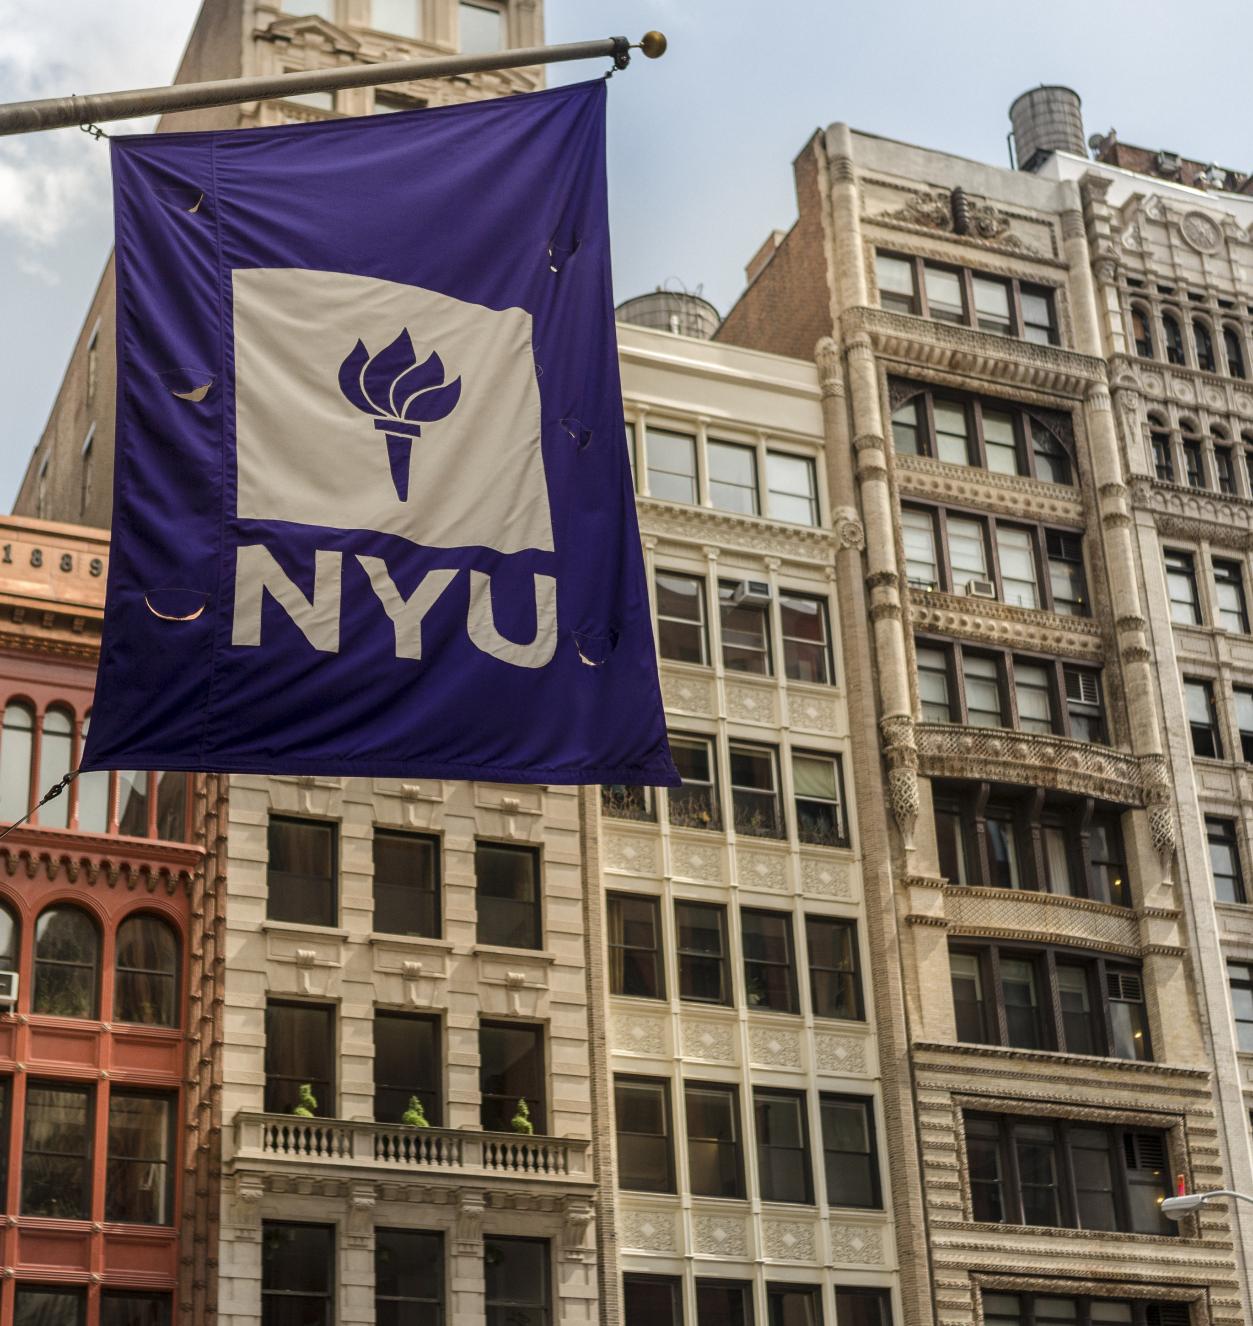 NYU flag against cityscape